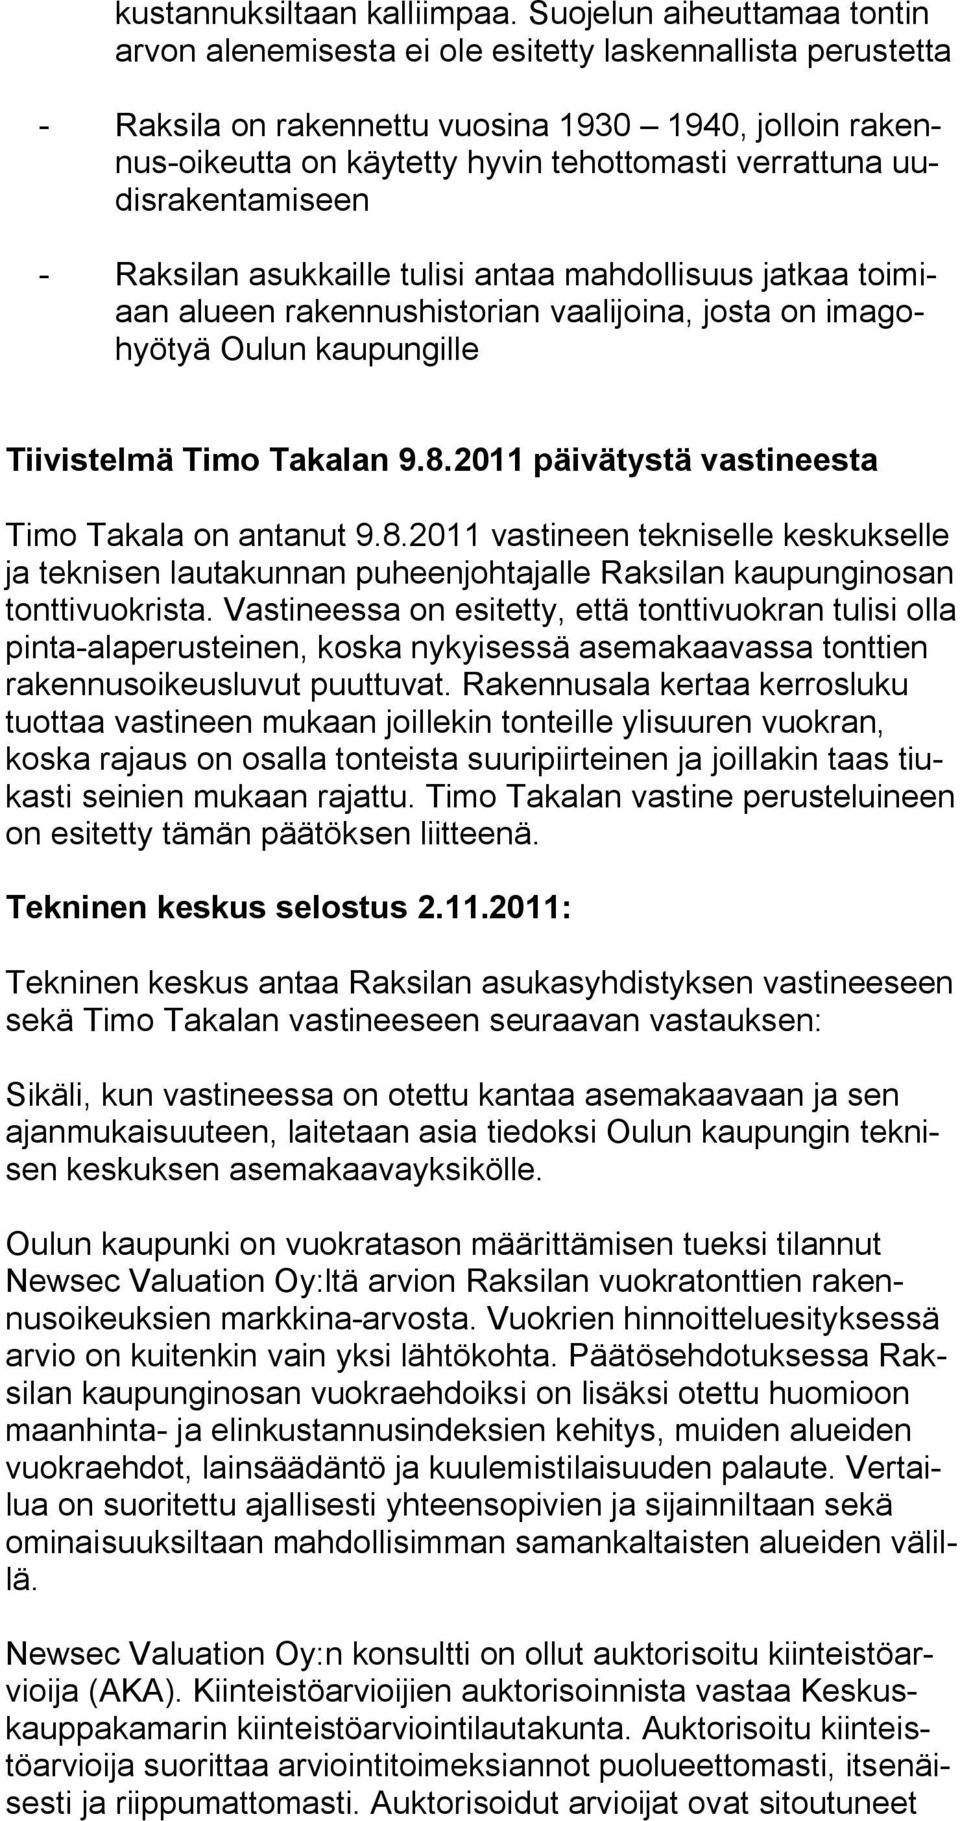 uudisrakentamiseen - Raksilan asukkaille tulisi antaa mahdollisuus jatkaa toimiaan alueen rakennushistorian vaalijoina, josta on imagohyötyä Oulun kaupungille Tiivistelmä Timo Takalan 9.8.